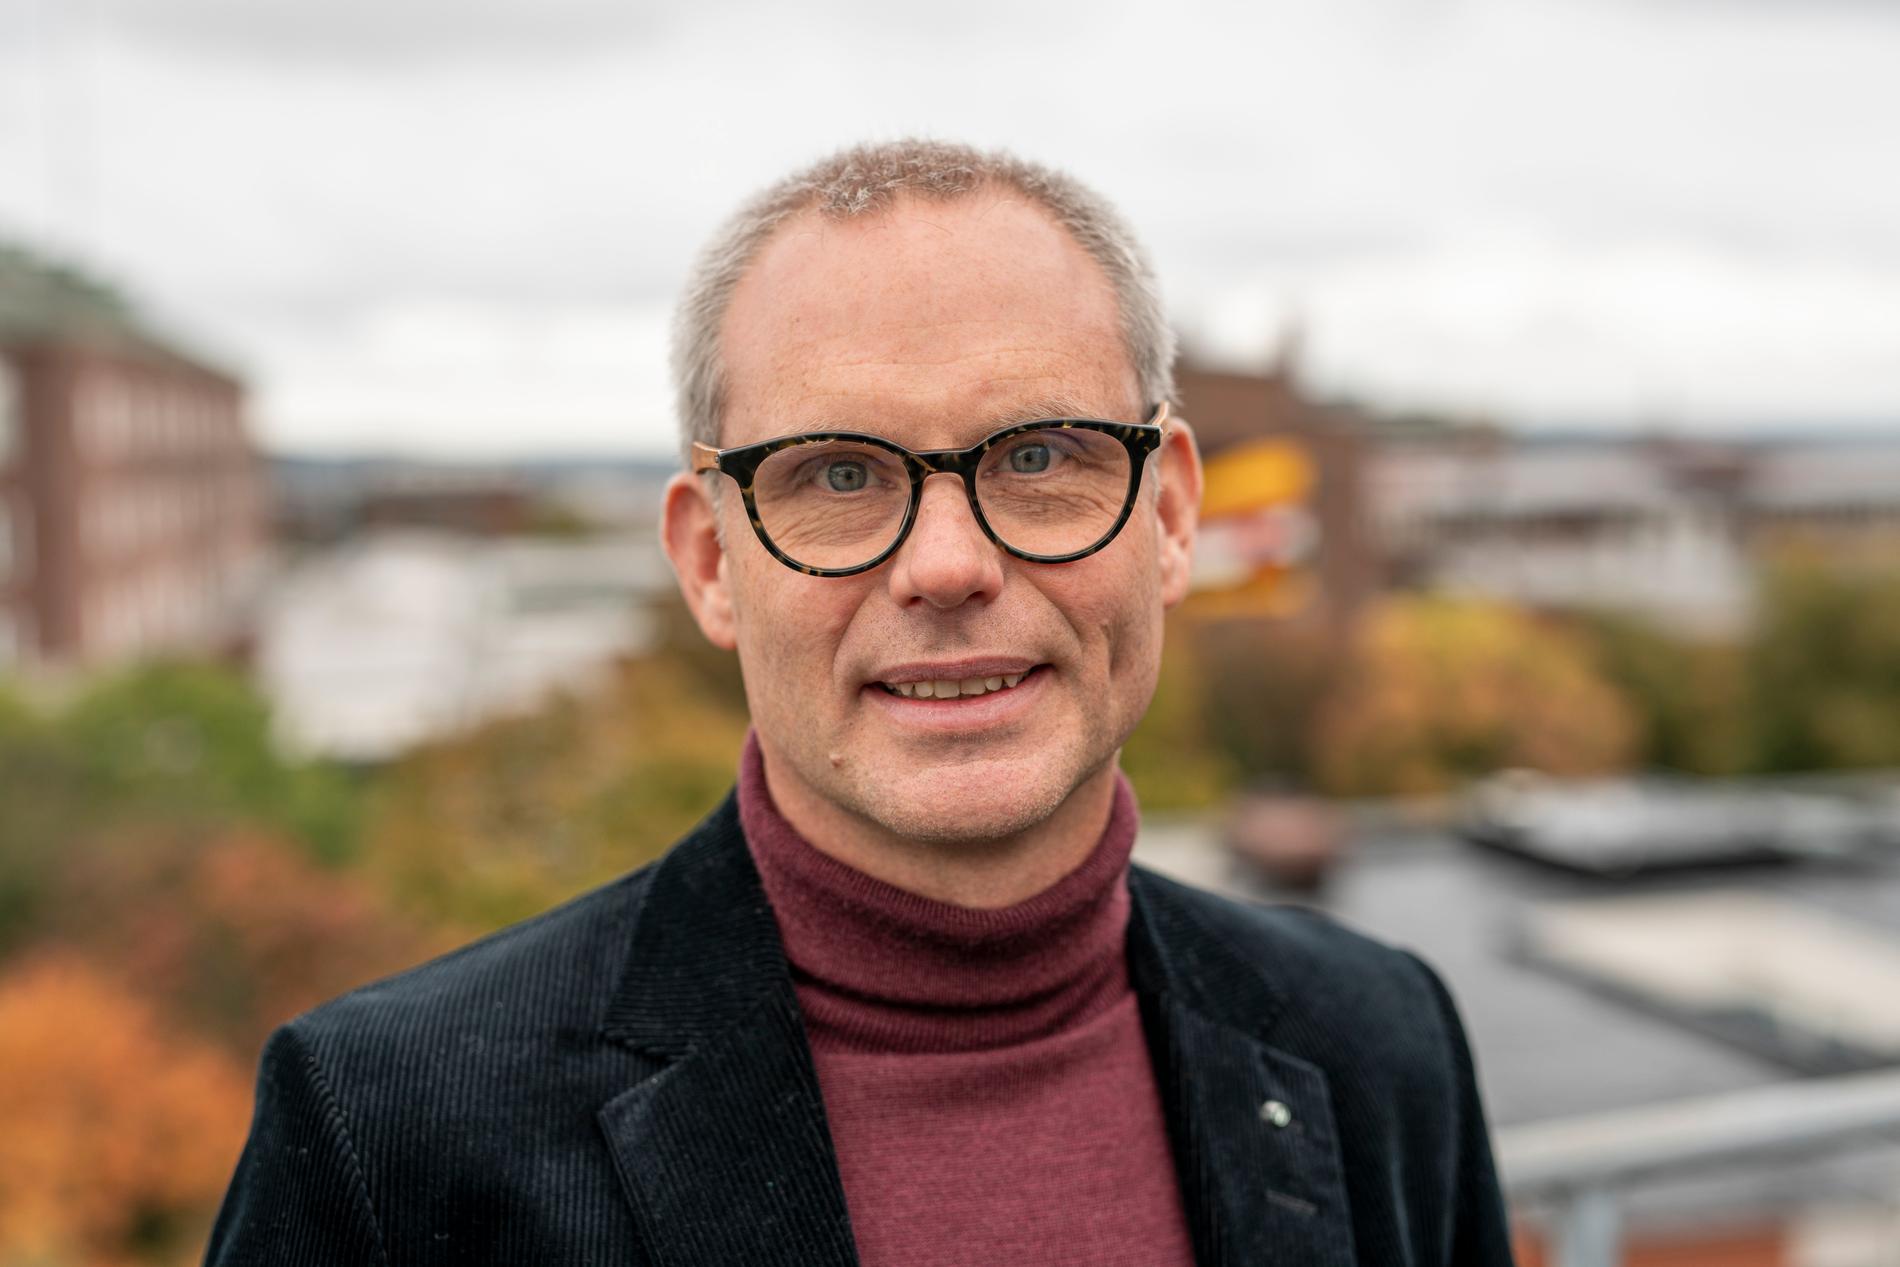 Henrik Thunman är professor i termokemisk omvandling vid Chalmers tekniska högskola i Göteborg.